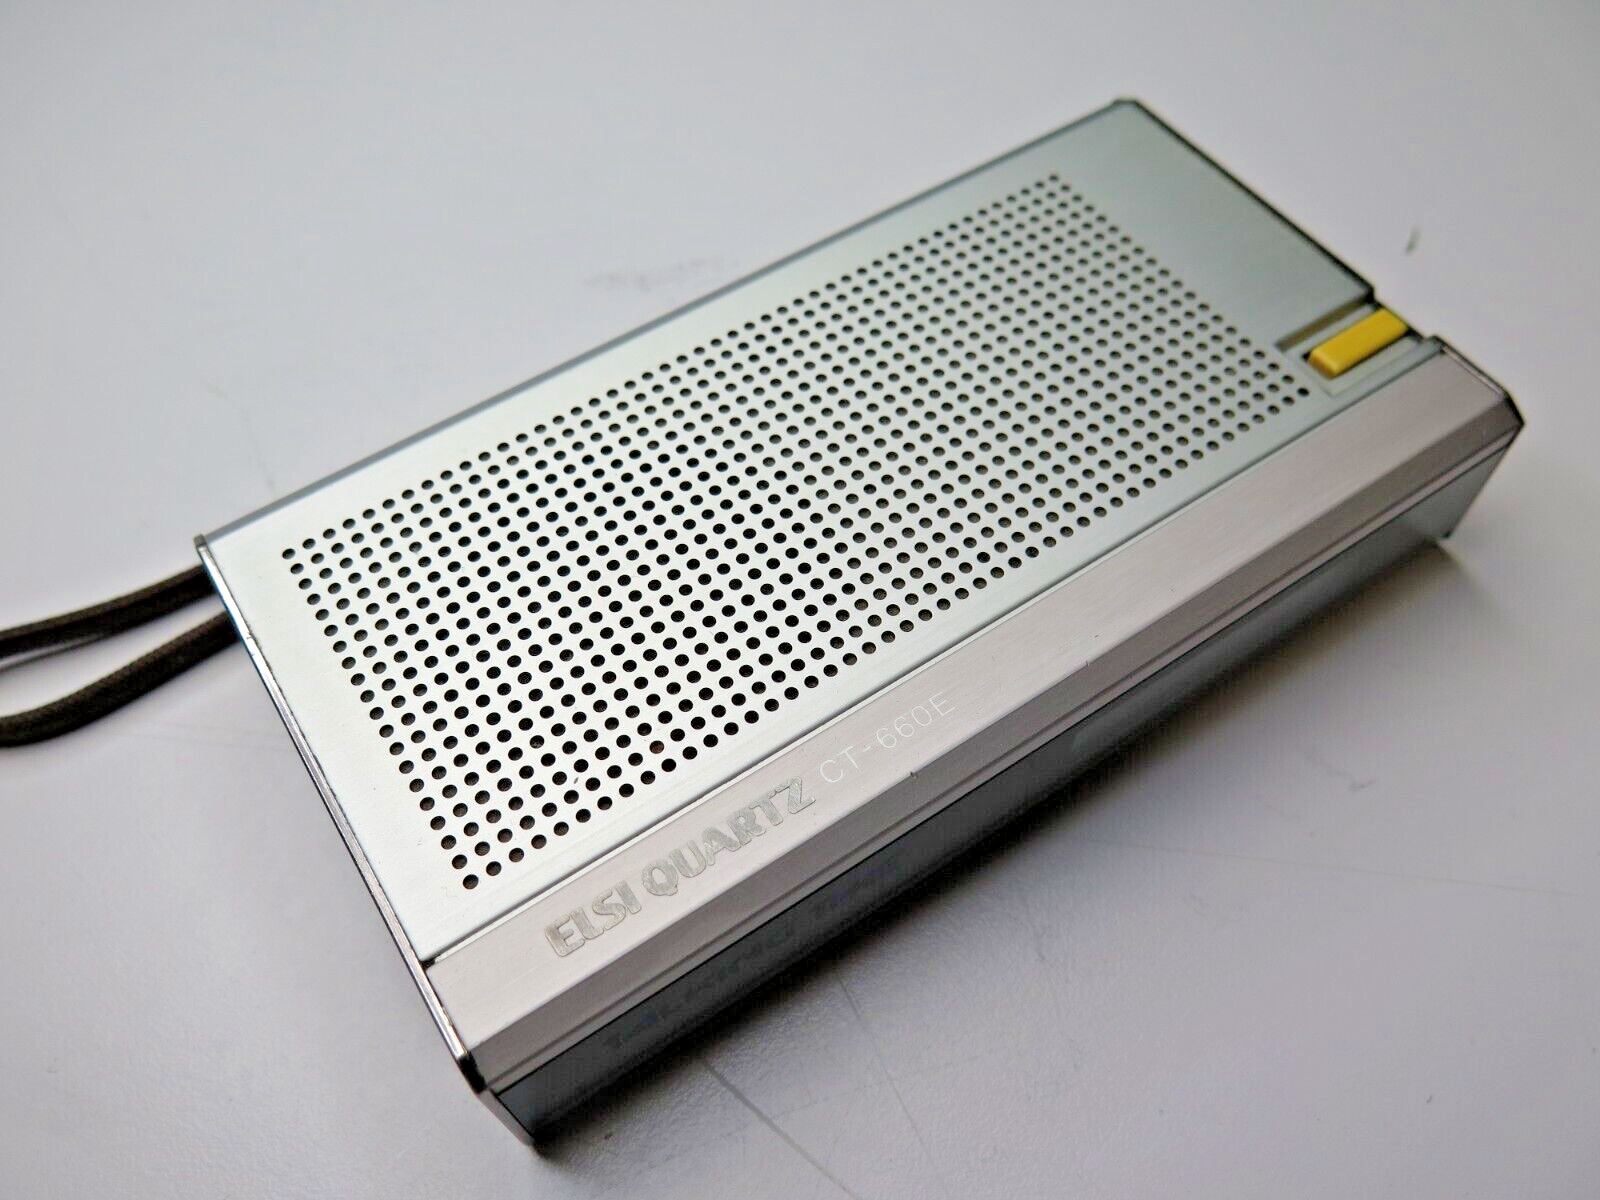 Vintage Sharp CT-660E Elsi Quartz Talking Clock, Alarm, Stop Watch